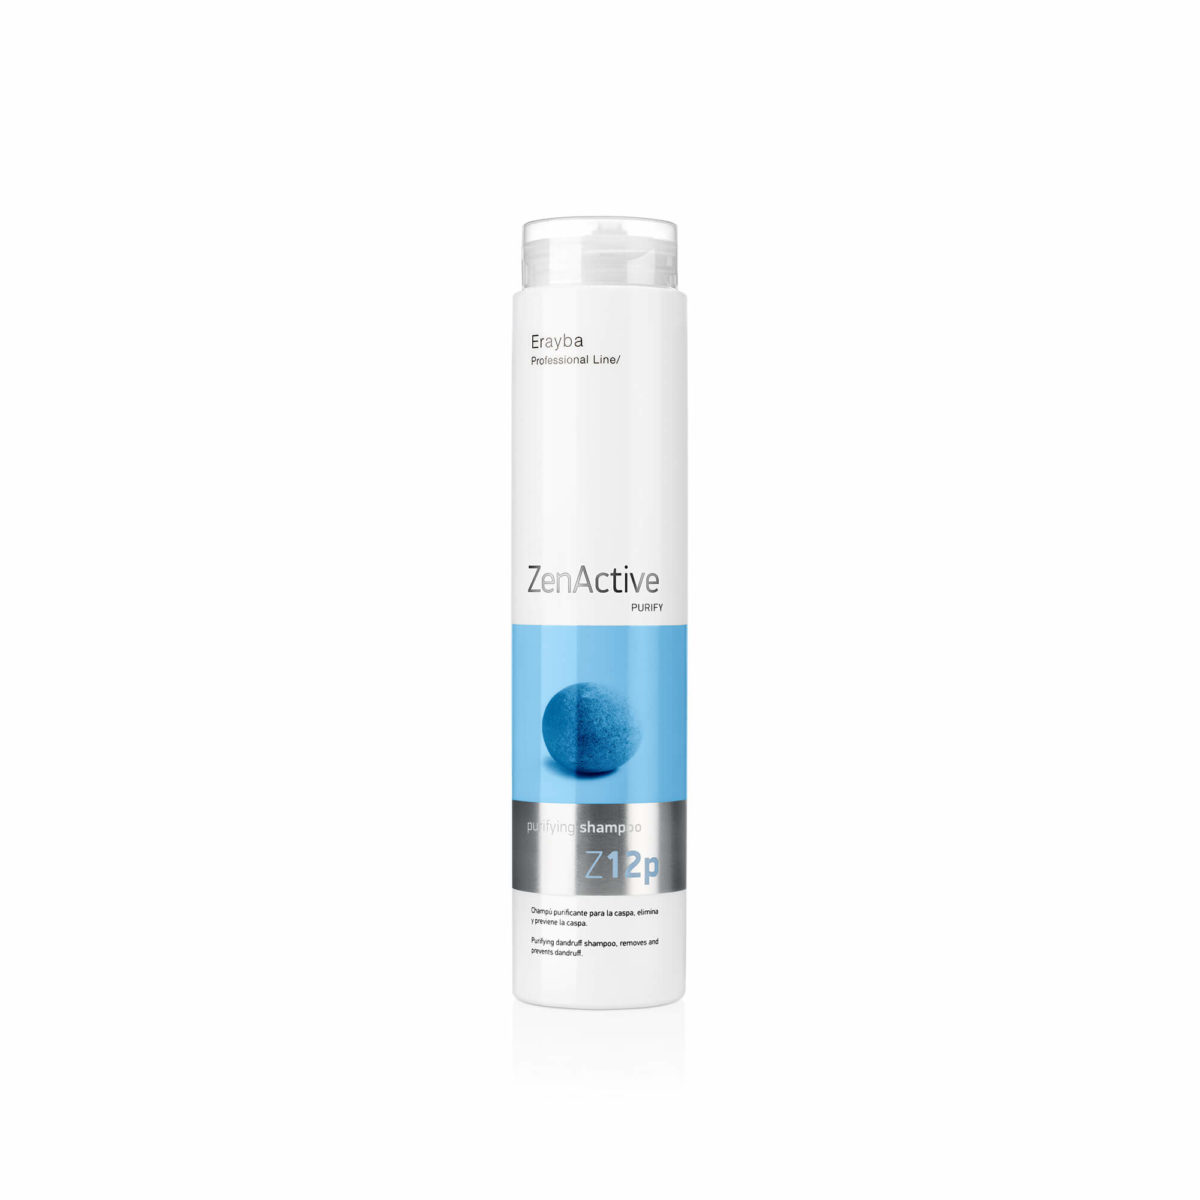 Erayba Zen Active Z12p purifying shampoo